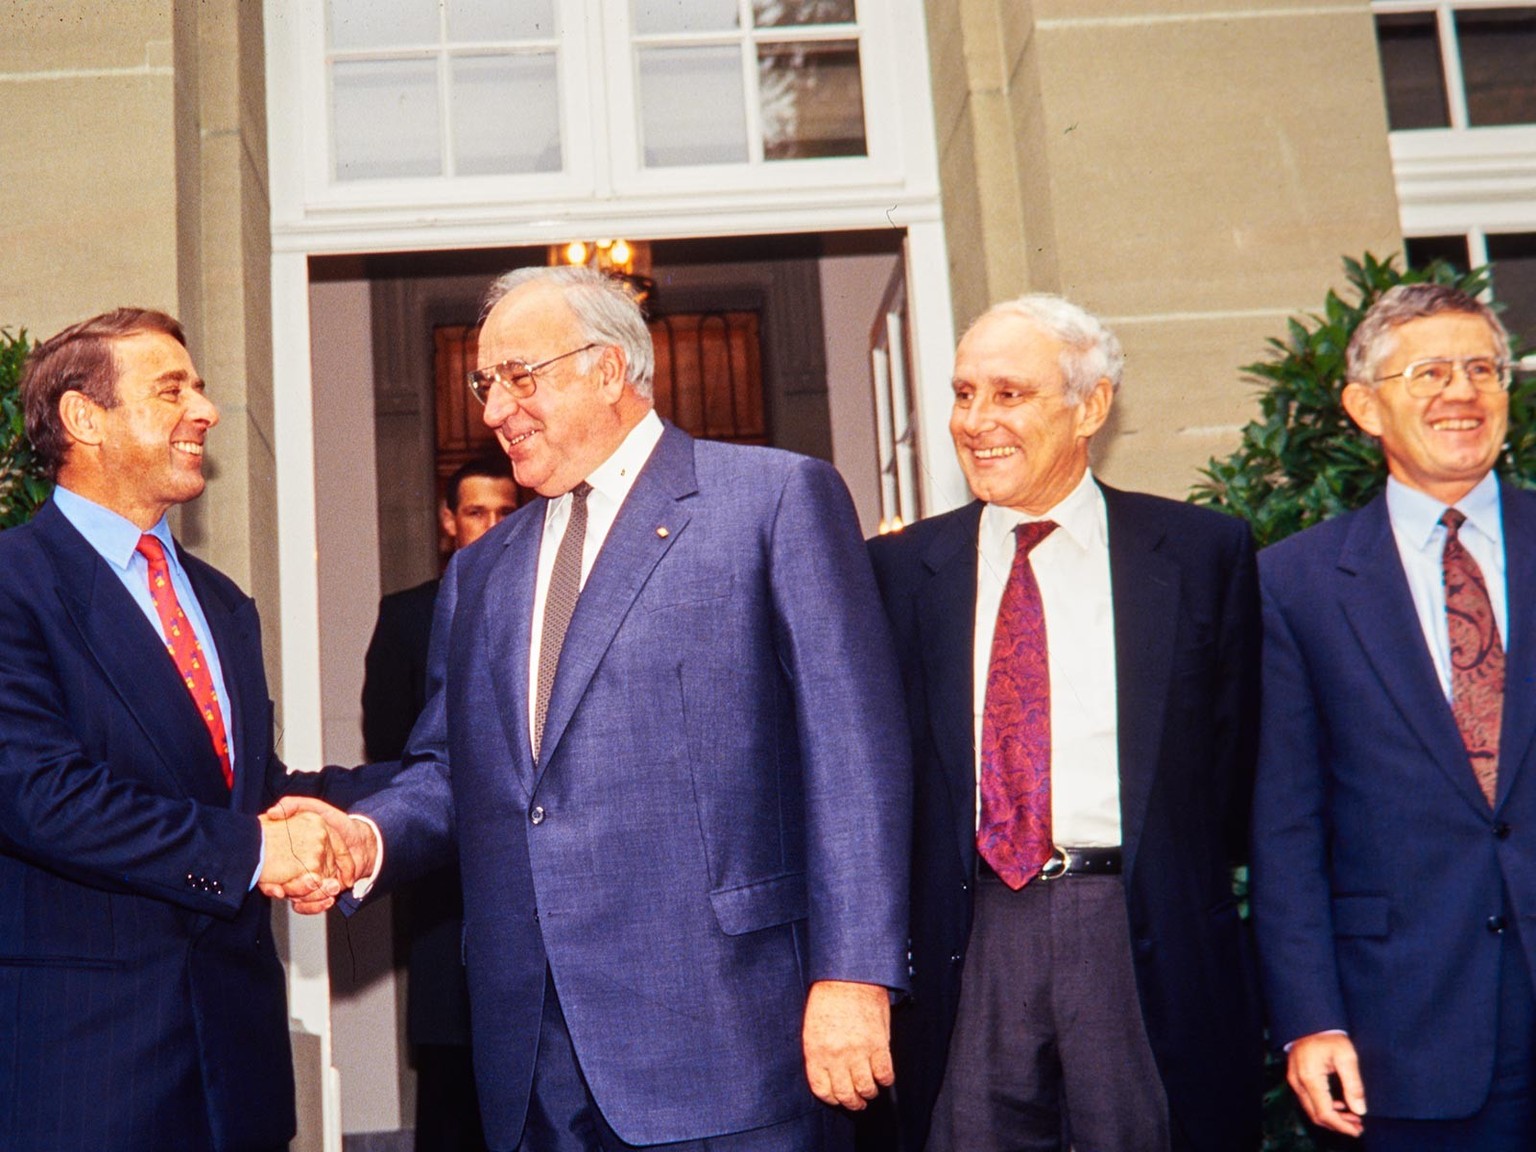 Bundespräsident Adolf Ogi und Helmut Kohl an einem Treffen im Oktober 1993. Ebenfalls dabei sind Flavio Cotti und Kaspar Villiger.
https://permalink.nationalmuseum.ch/101319199